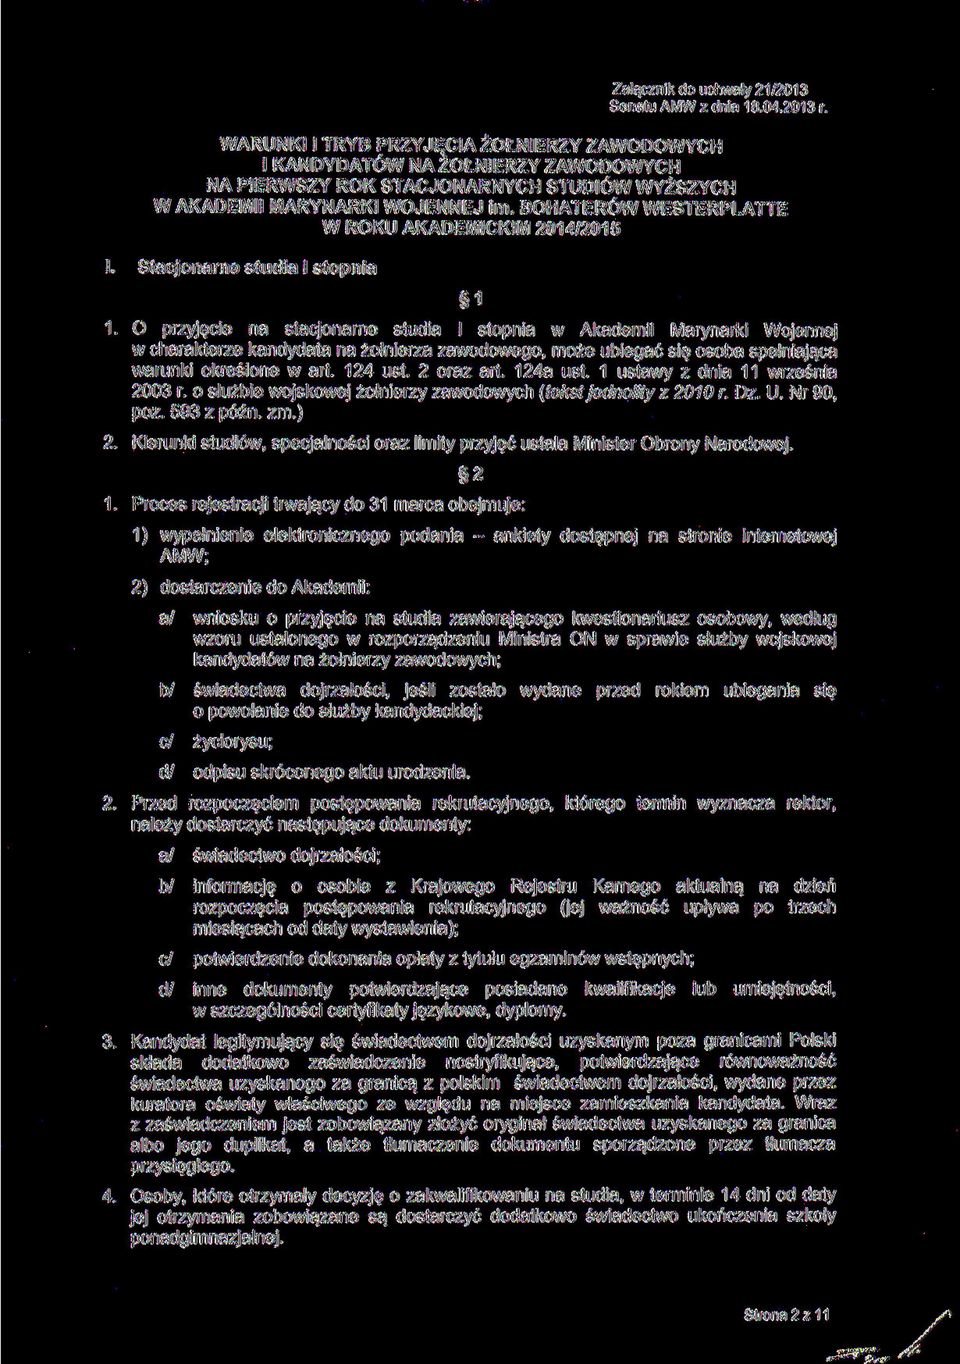 kandydata na żołnierza zawodowego może ubiegać się osoba spełniająca warunki określone w art 124 ust 2 oraz art 124a ust 1 ustawy z dnia 11 września 2003 r o służbie wojskowej żołnierzy zawodowych